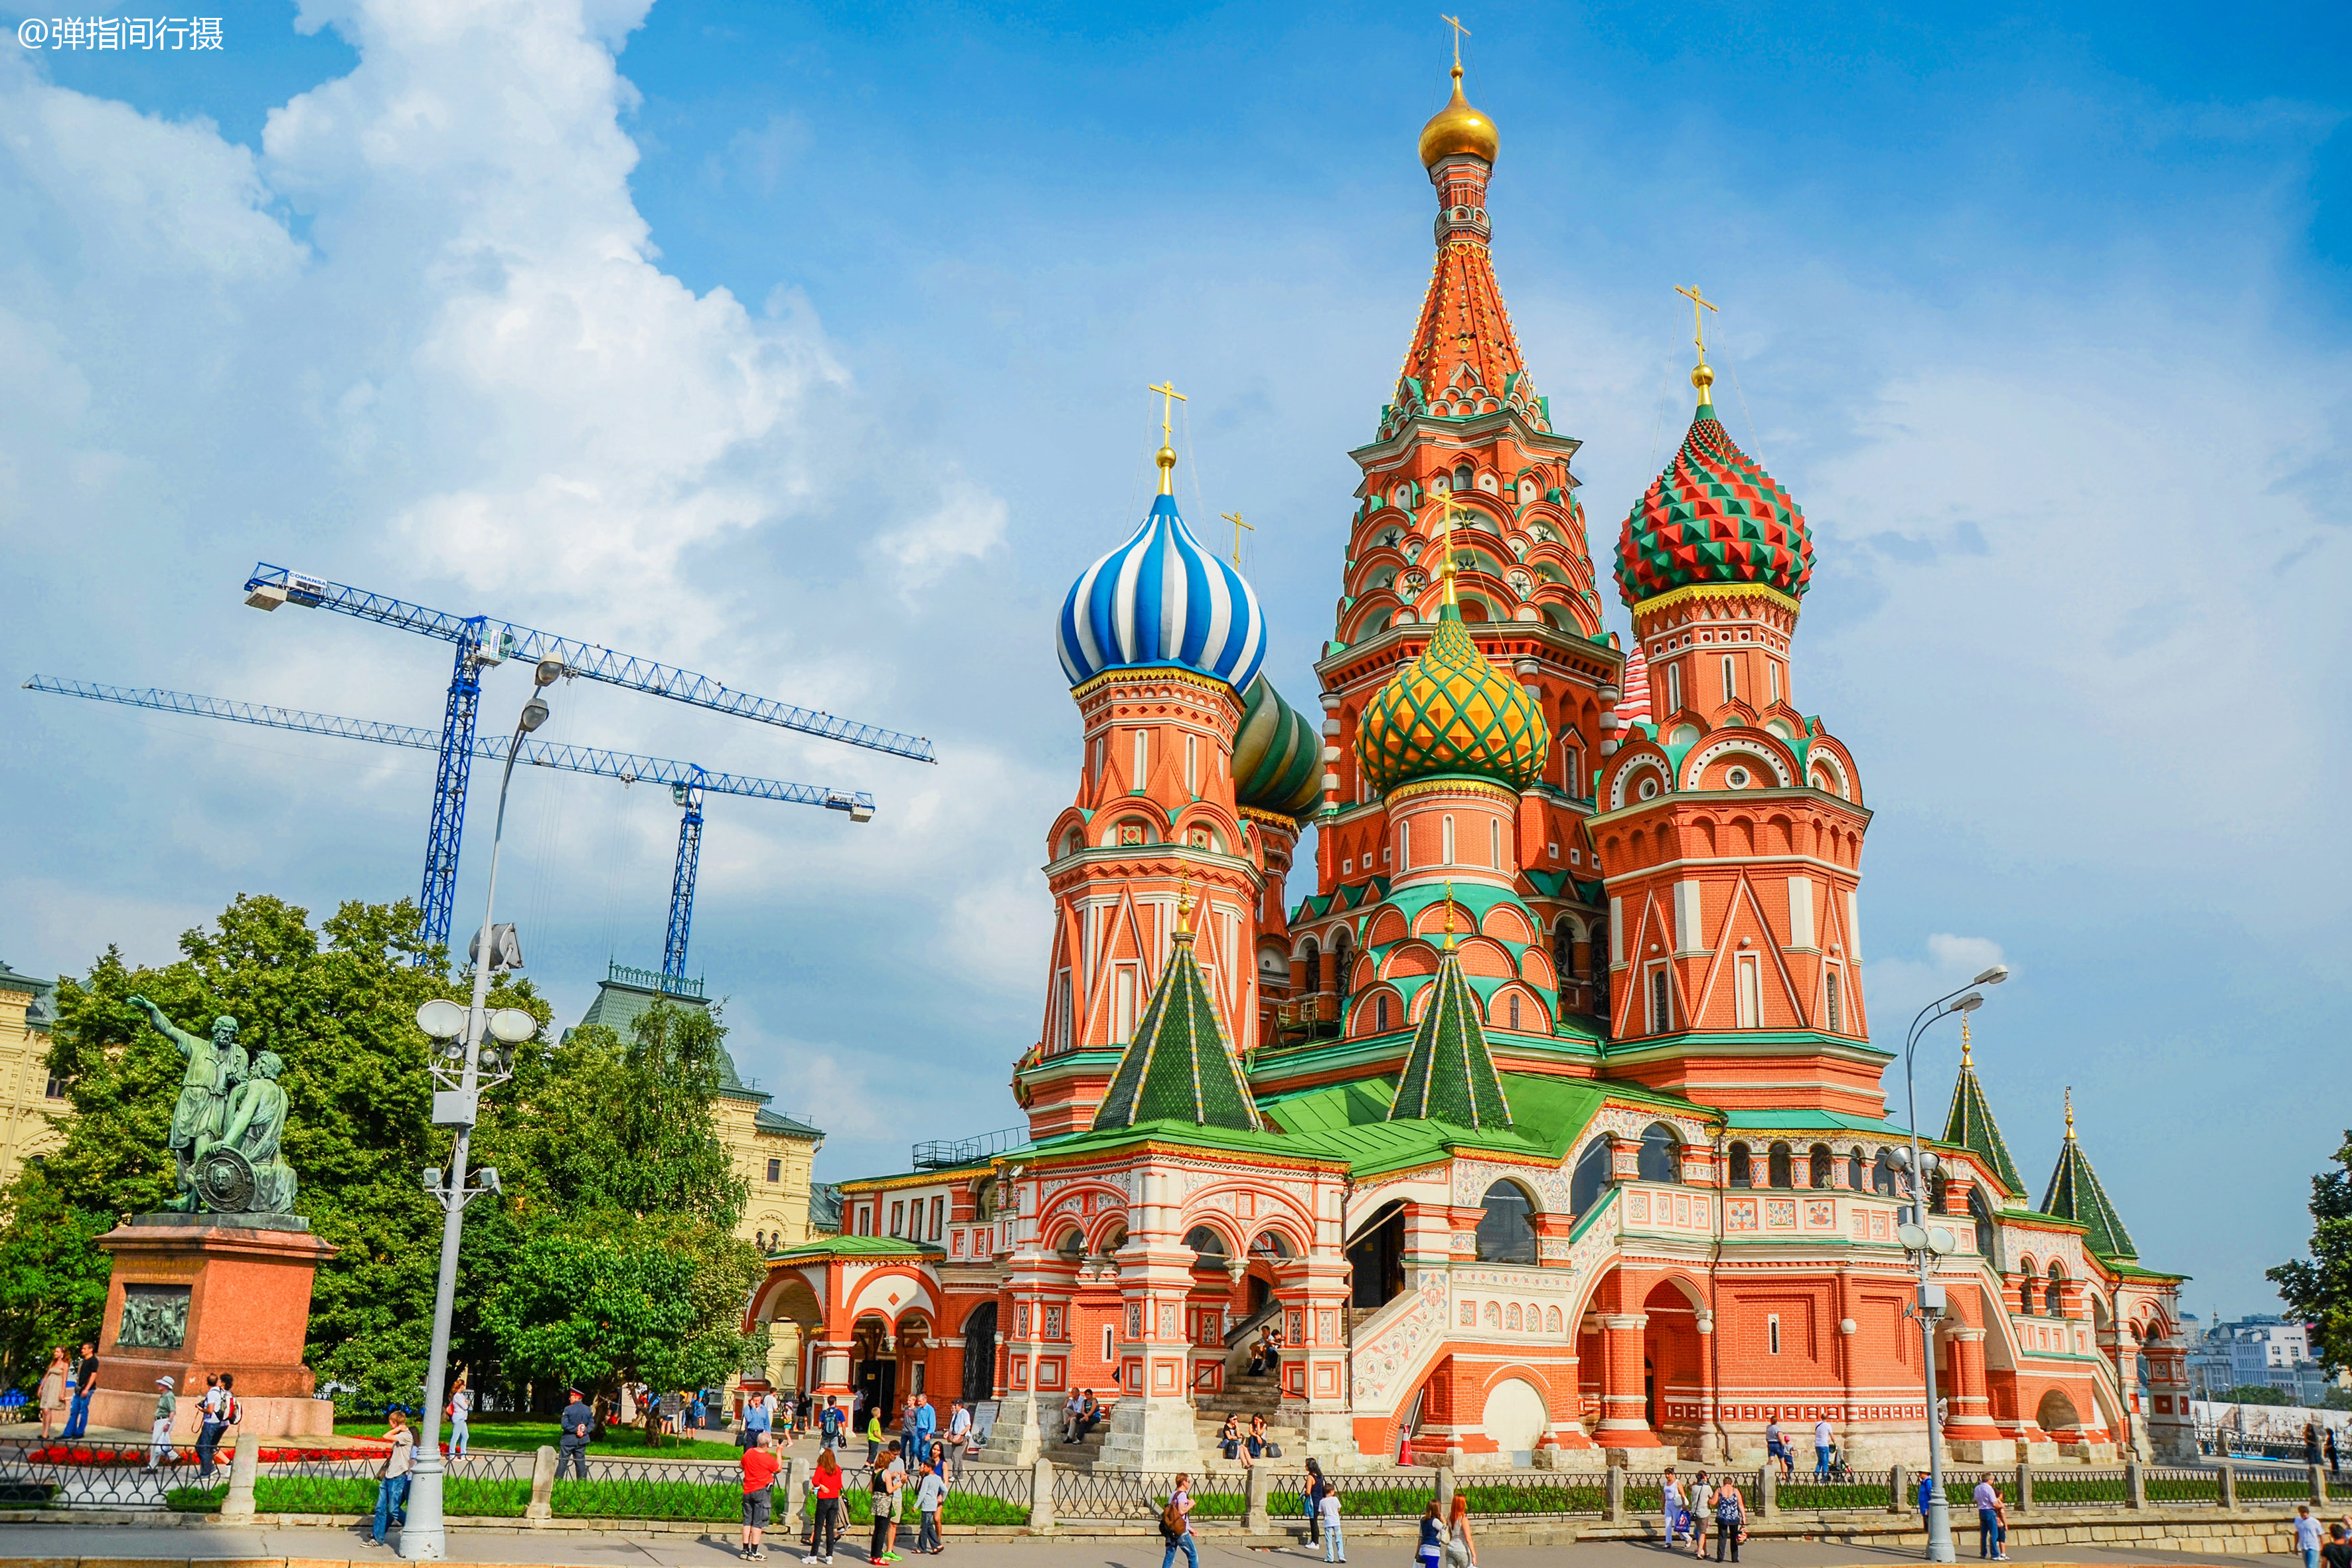 俄罗斯莫斯科红场,号称世界最美城市广场,建筑和美女都是风景